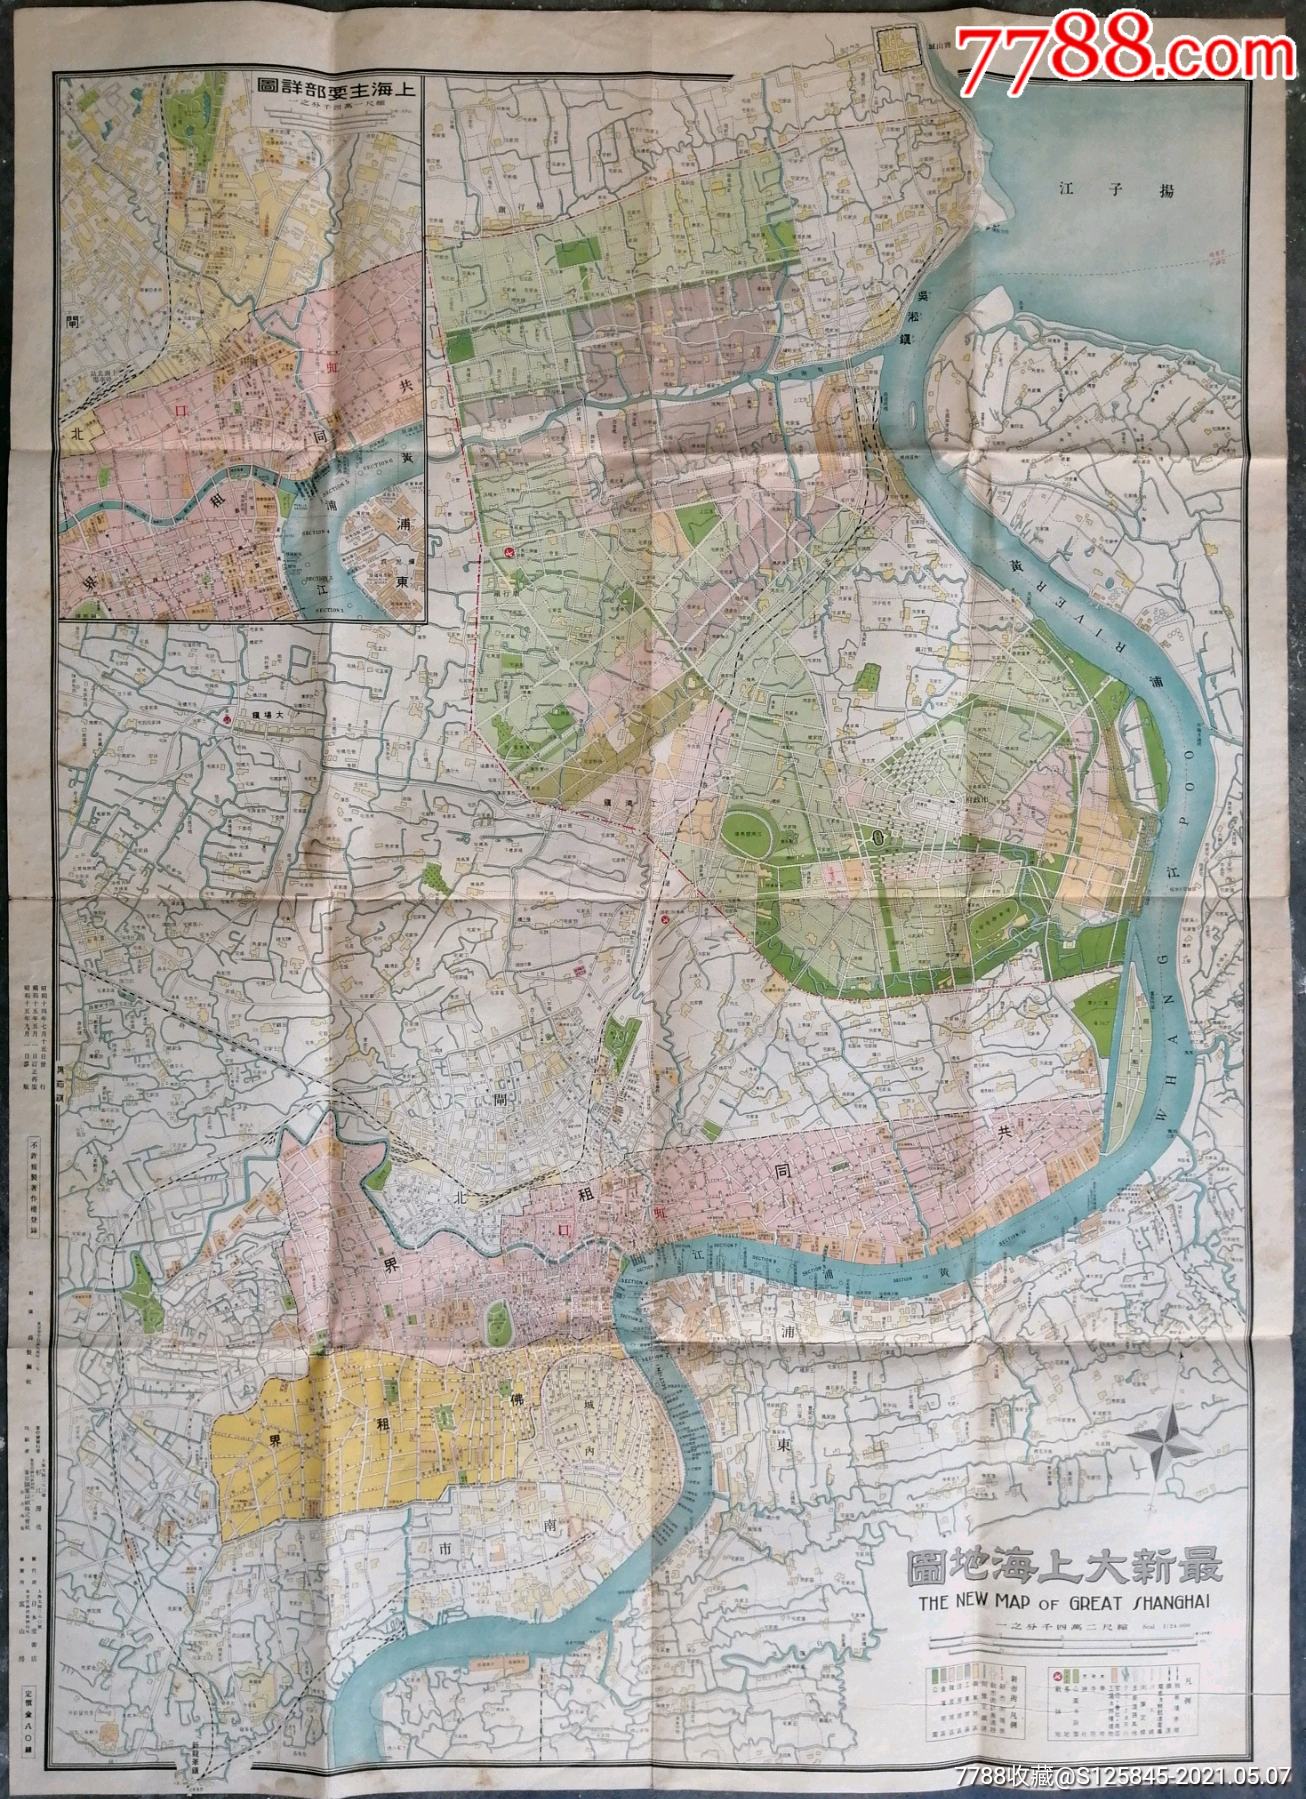 1939年《最新大上海新地图》,此图很大(110cm*80cm),绘制精美,珍贵